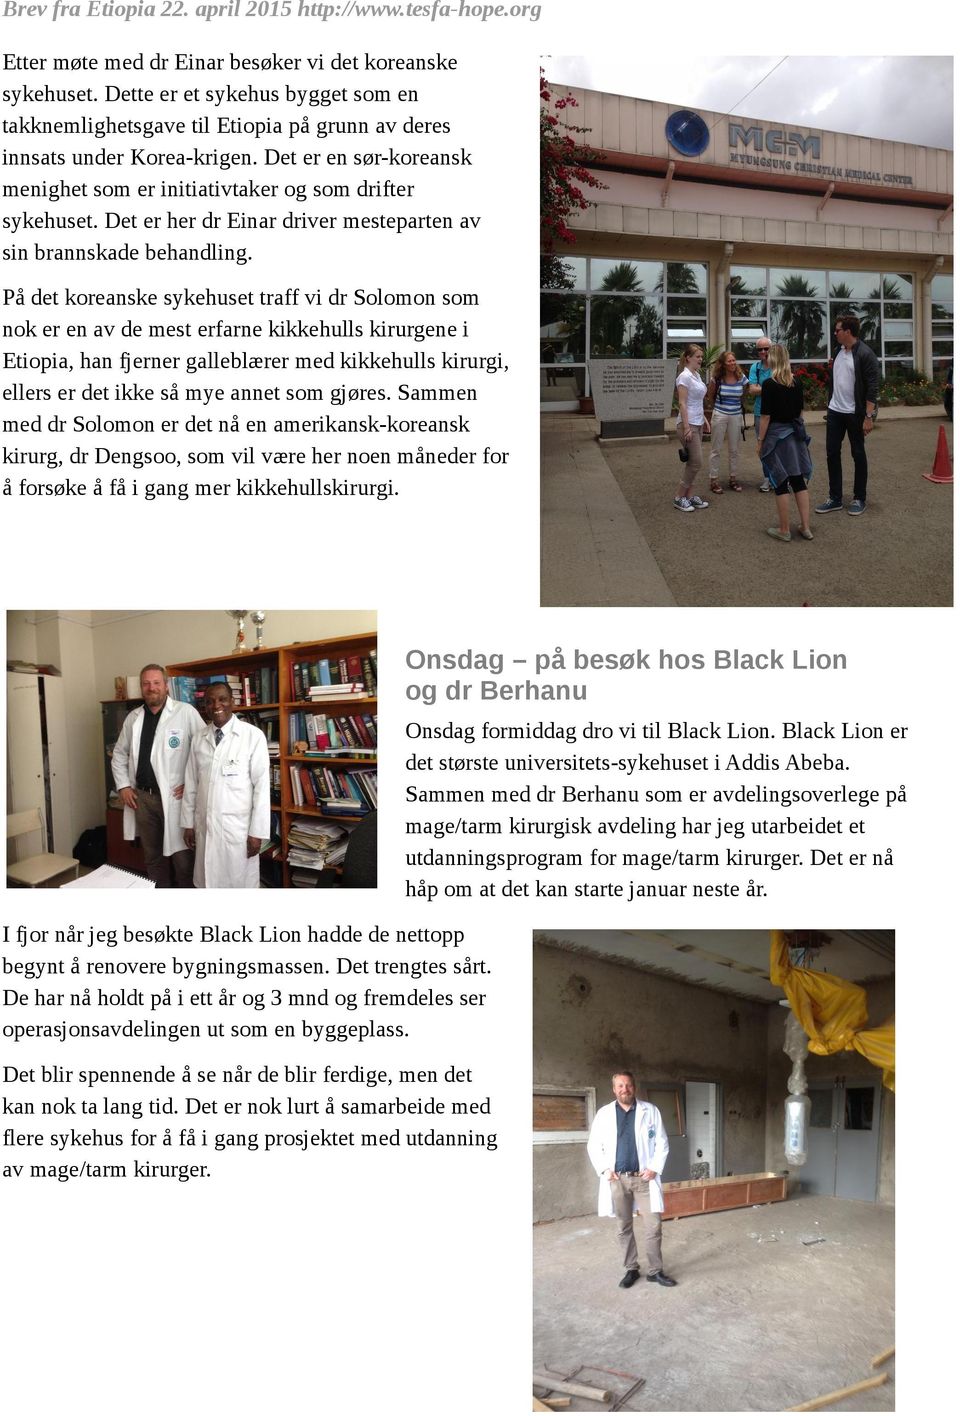 På det koreanske sykehuset traff vi dr Solomon som nok er en av de mest erfarne kikkehulls kirurgene i Etiopia, han fjerner galleblærer med kikkehulls kirurgi, ellers er det ikke så mye annet som